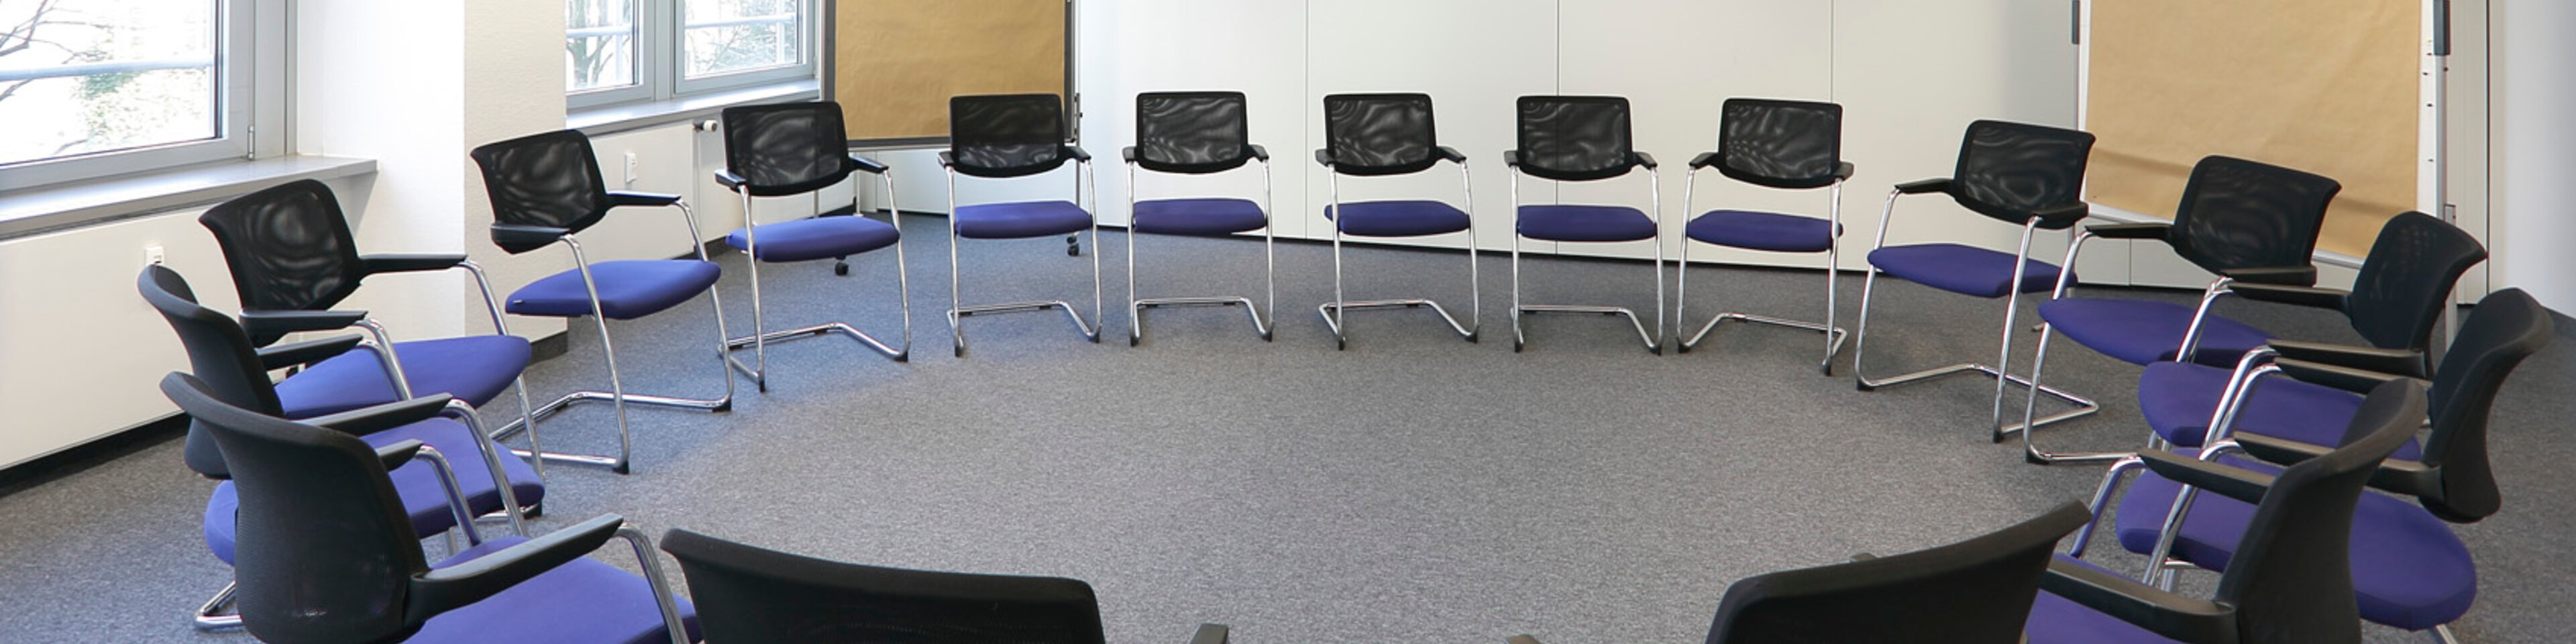 Stuhlkreis in einem Sitzungsraum | © Caritas München und Oberbayern